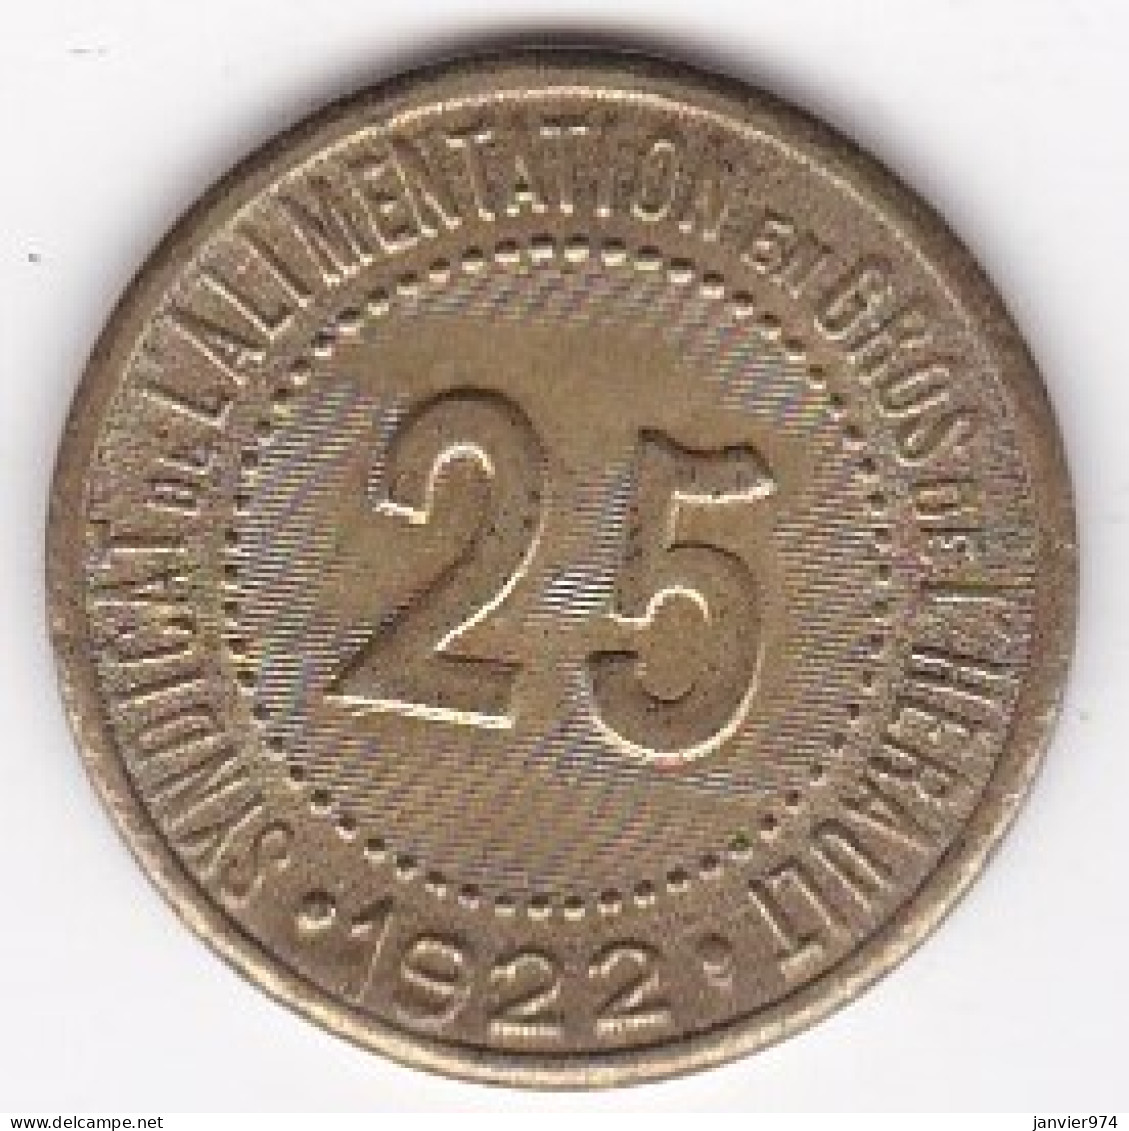 34 Hérault. Syndicat De L'Alimentation En Gros De L’Hérault 25 Centimes 1922, En Laiton - Monetary / Of Necessity